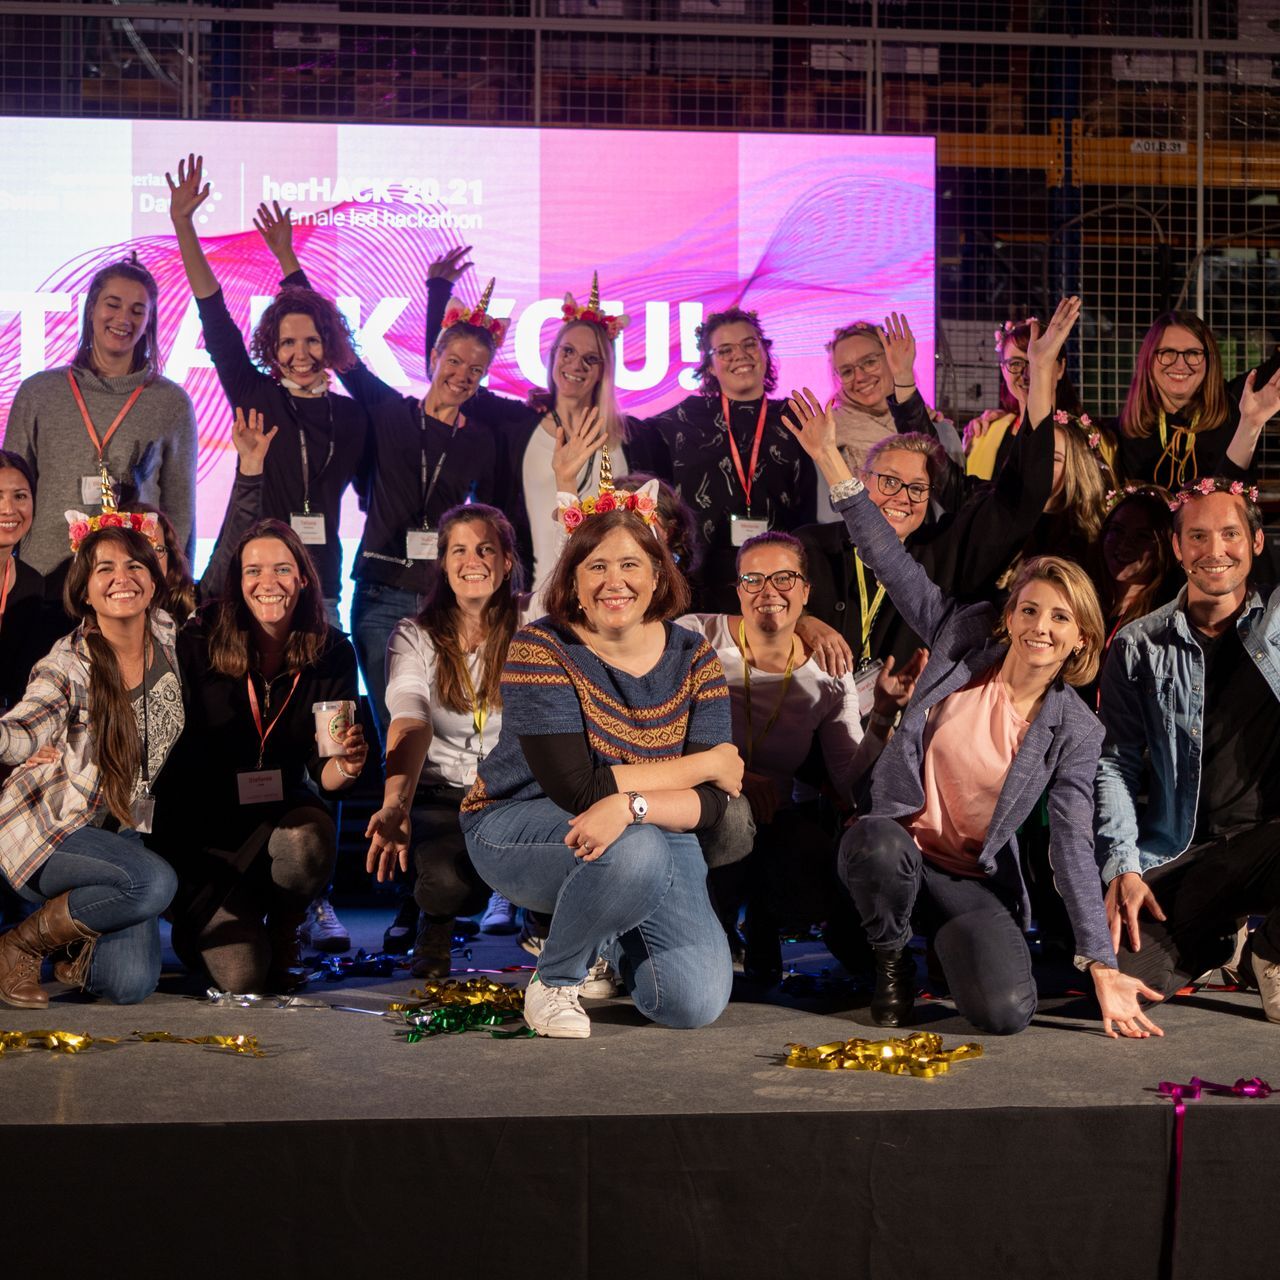 L’hackaton femminile “HerHack”, organizzato il 6 e 7 novembre nell’ambito della “Giornata Digitale Svizzera”, è stato vinto dal Team Iconics, formato da Melanie Menge, Fiona Hediger, Yamina Siegrist, Maria Kliesch ed Elisabeth MacKenzie (Foto: Moritz Schmid)